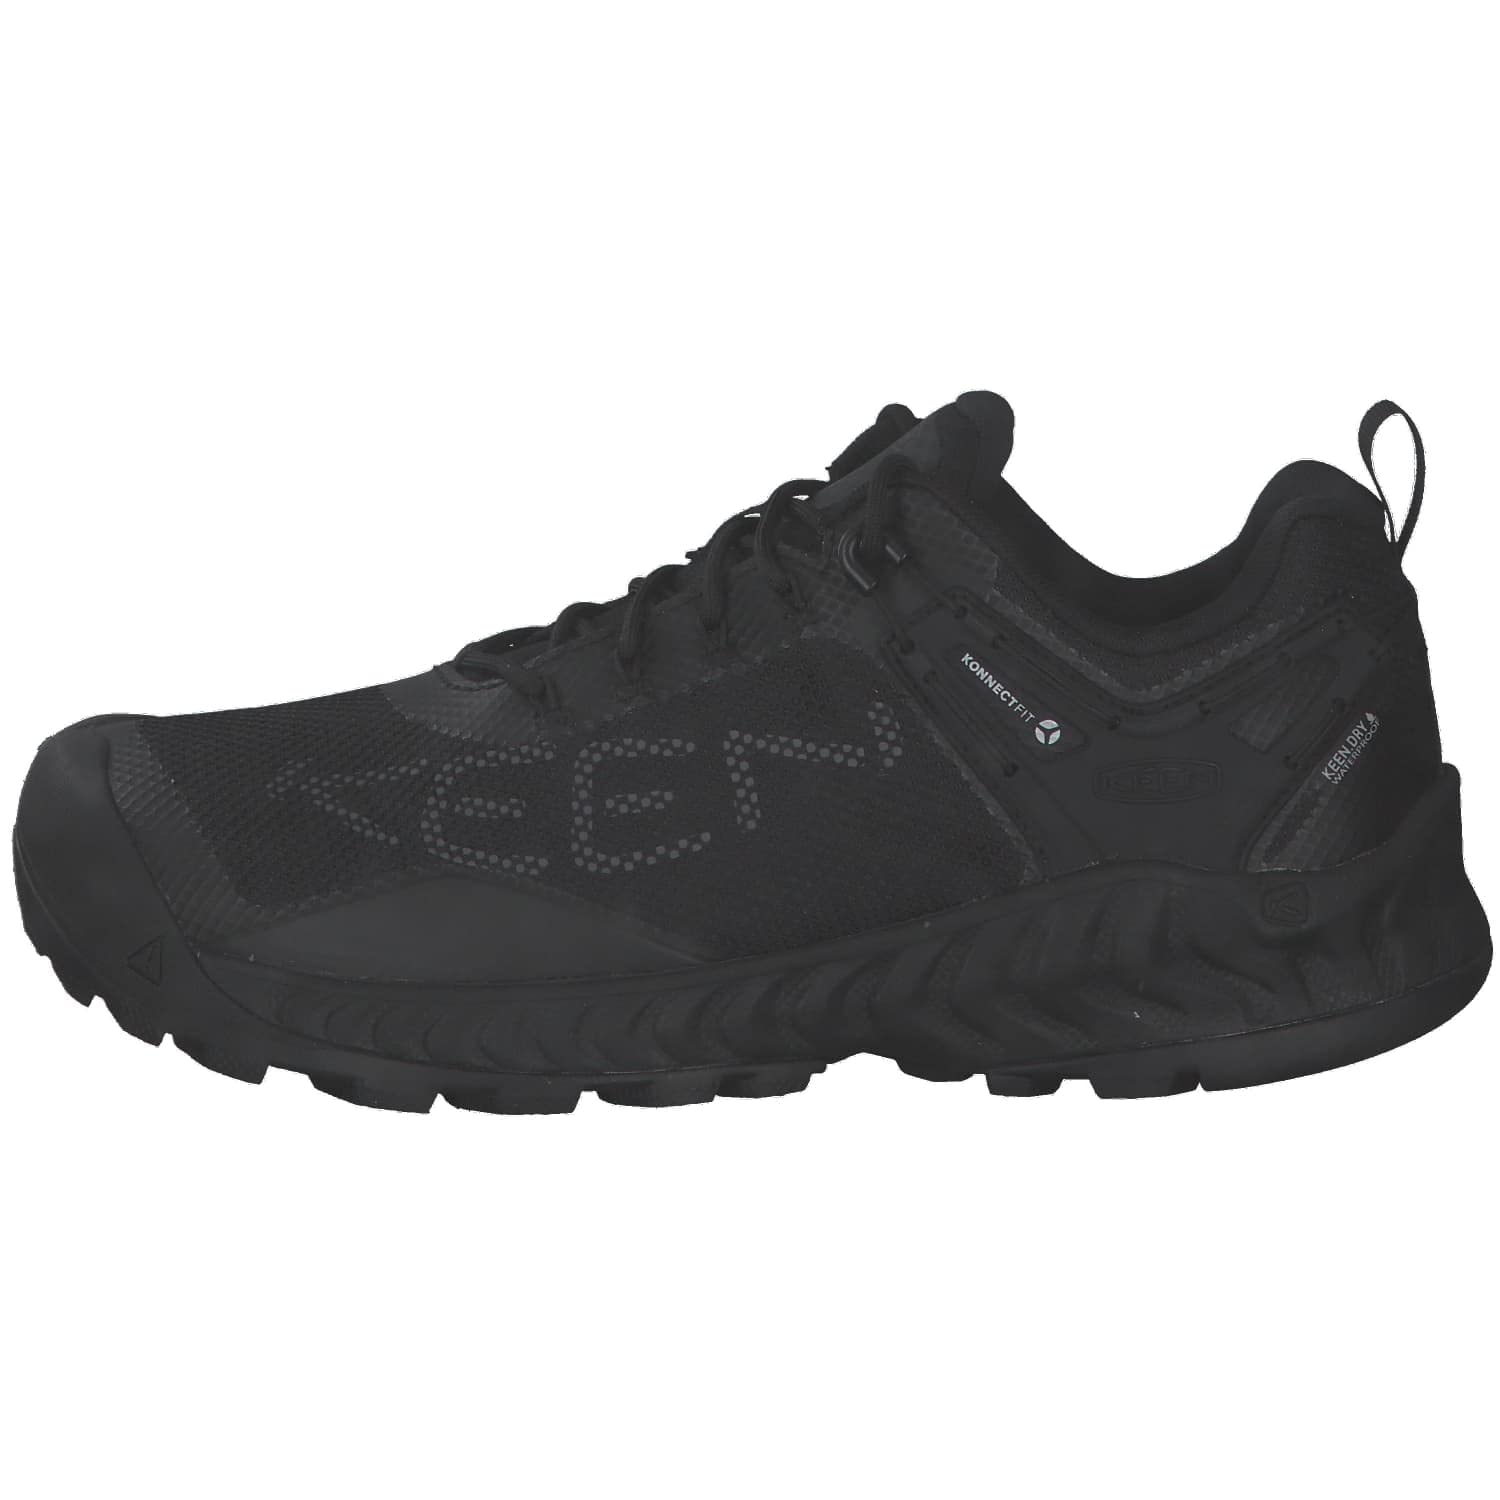 KEEN Men's Nxis Evo Low Height Waterproof Hiking Shoes